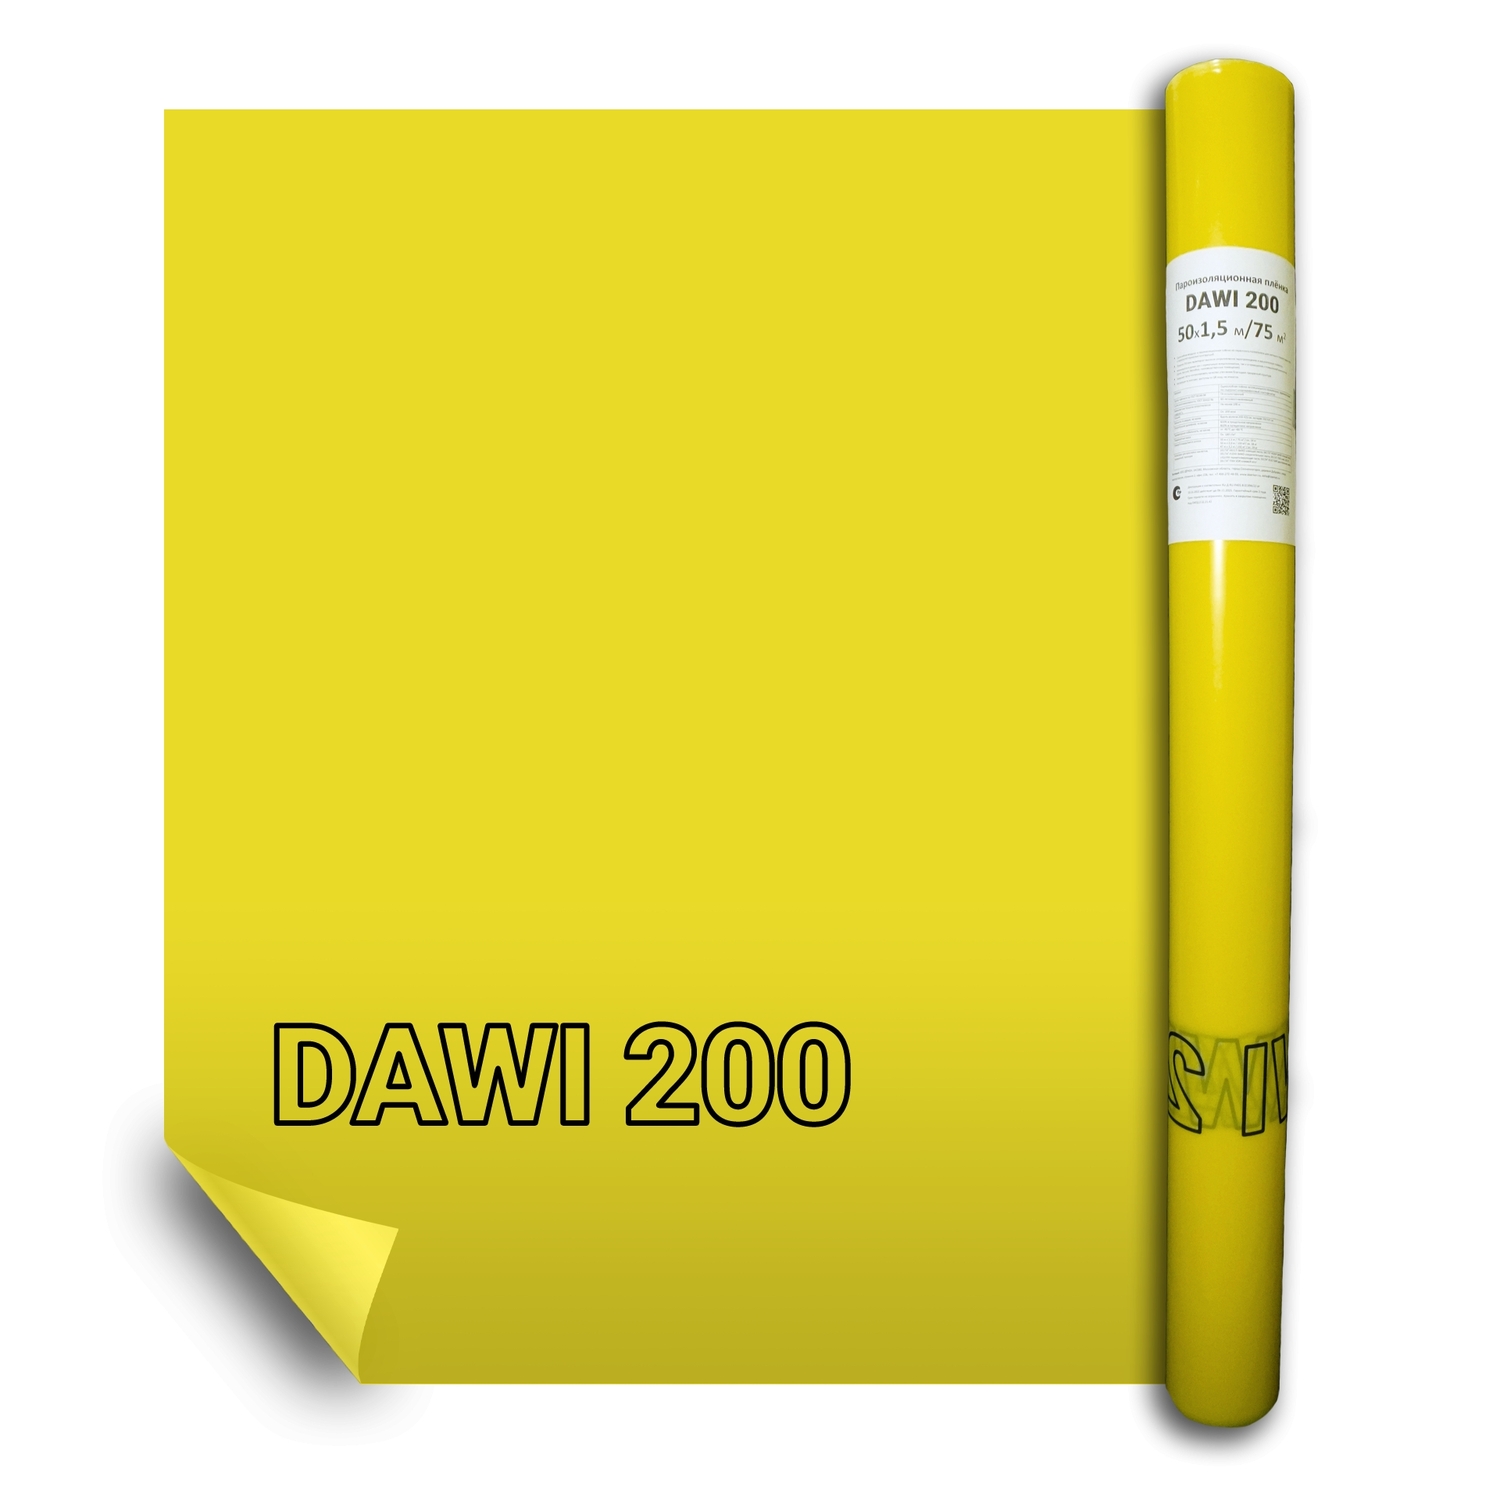 Пленка пароизоляционная Delta-Dawi 200 универсальная (75м2)